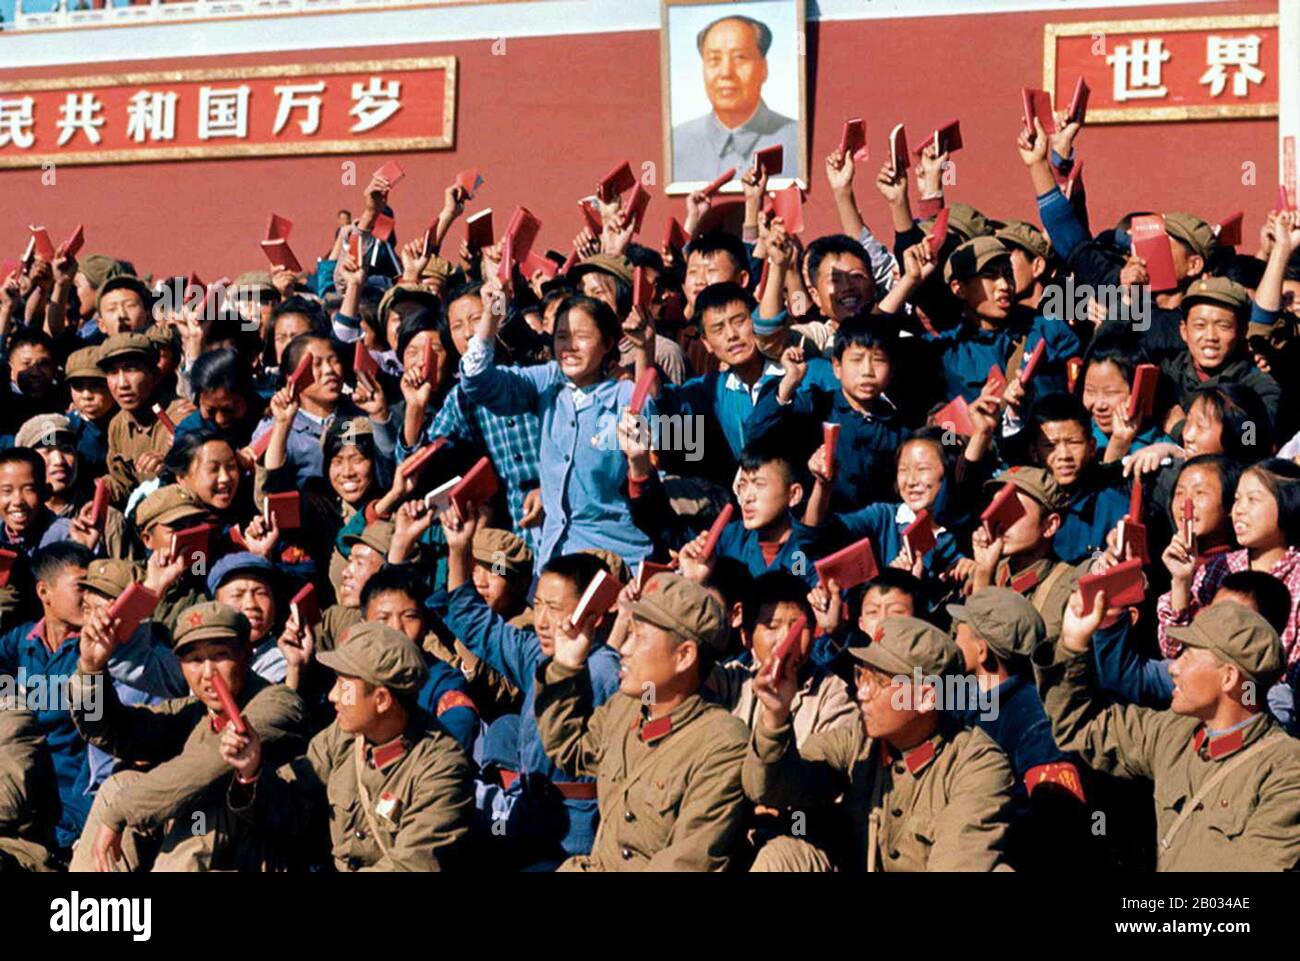 Die Große Proletarische Kulturrevolution, allgemein als Kulturrevolution bekannt, war eine gesellschaftspolitische Bewegung, die von 1966 bis 1976 in der Volksrepublik China stattfand. Das von Mao Zedong, dem damaligen Vorsitzenden der Kommunistischen Partei Chinas, in Bewegung gesetzte Ziel war es, den Nationalsozialismus im Land durchzusetzen, indem es kapitalistische, traditionelle und kulturelle Elemente aus der chinesischen Gesellschaft herausnahm und die maoistische Rechtgläubigkeit innerhalb der Partei auferlegte. Die Kulturrevolution schädigte das Land wirtschaftlich und sozial in großem Maßstab. Millionen von Menschen wurden in der gewalttätigen Factional verfolgt Stockfoto